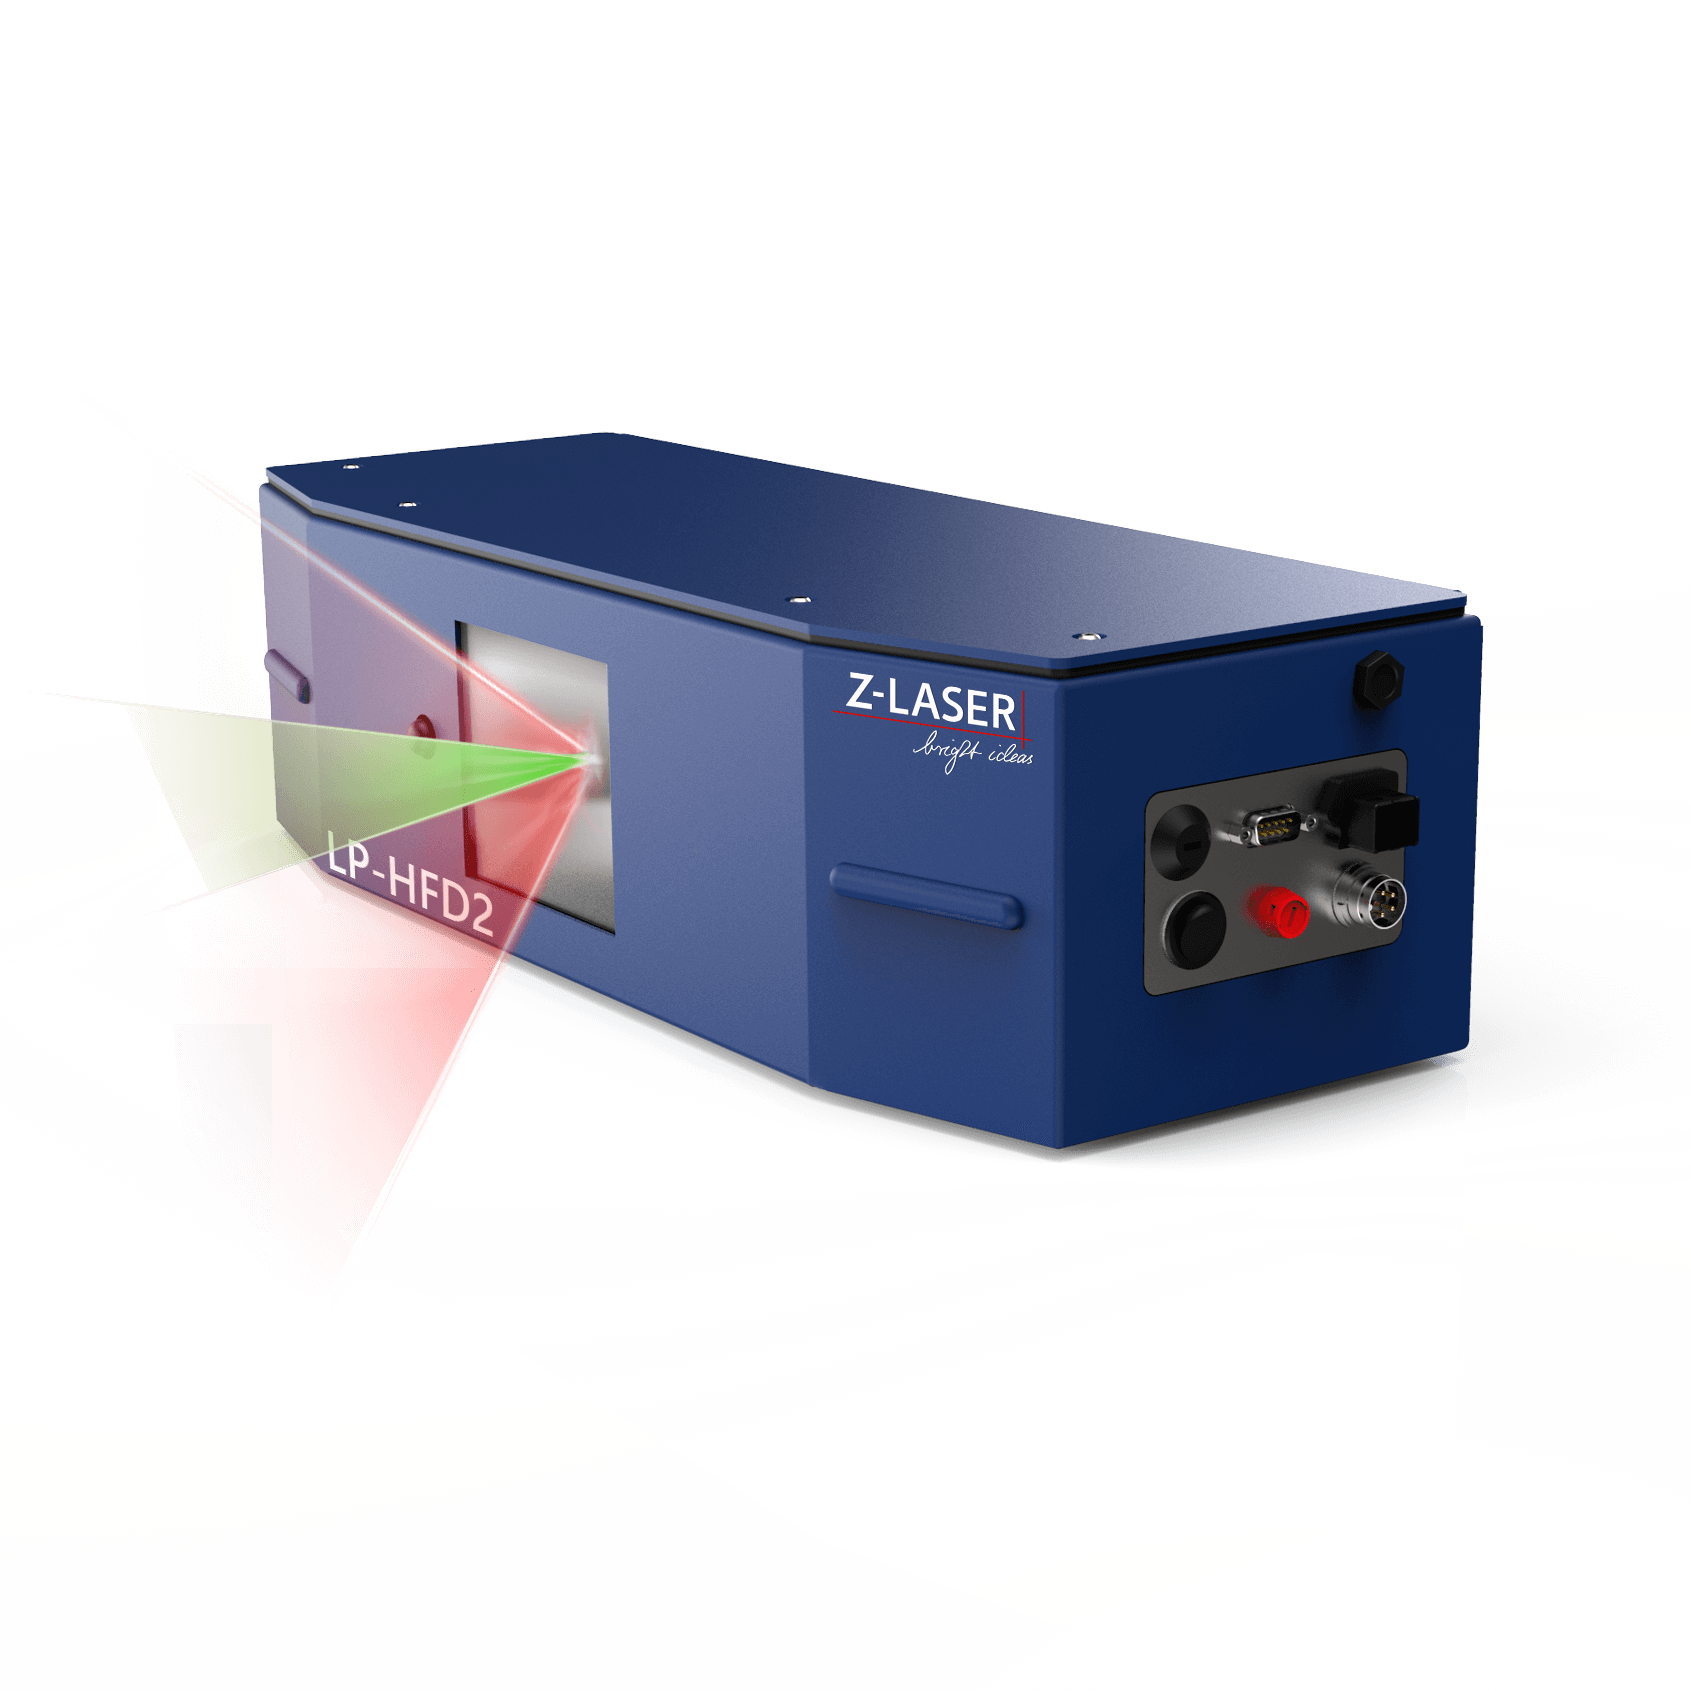 Z-Laser LP-HFD2 Tele Peltier Cooler Special Model